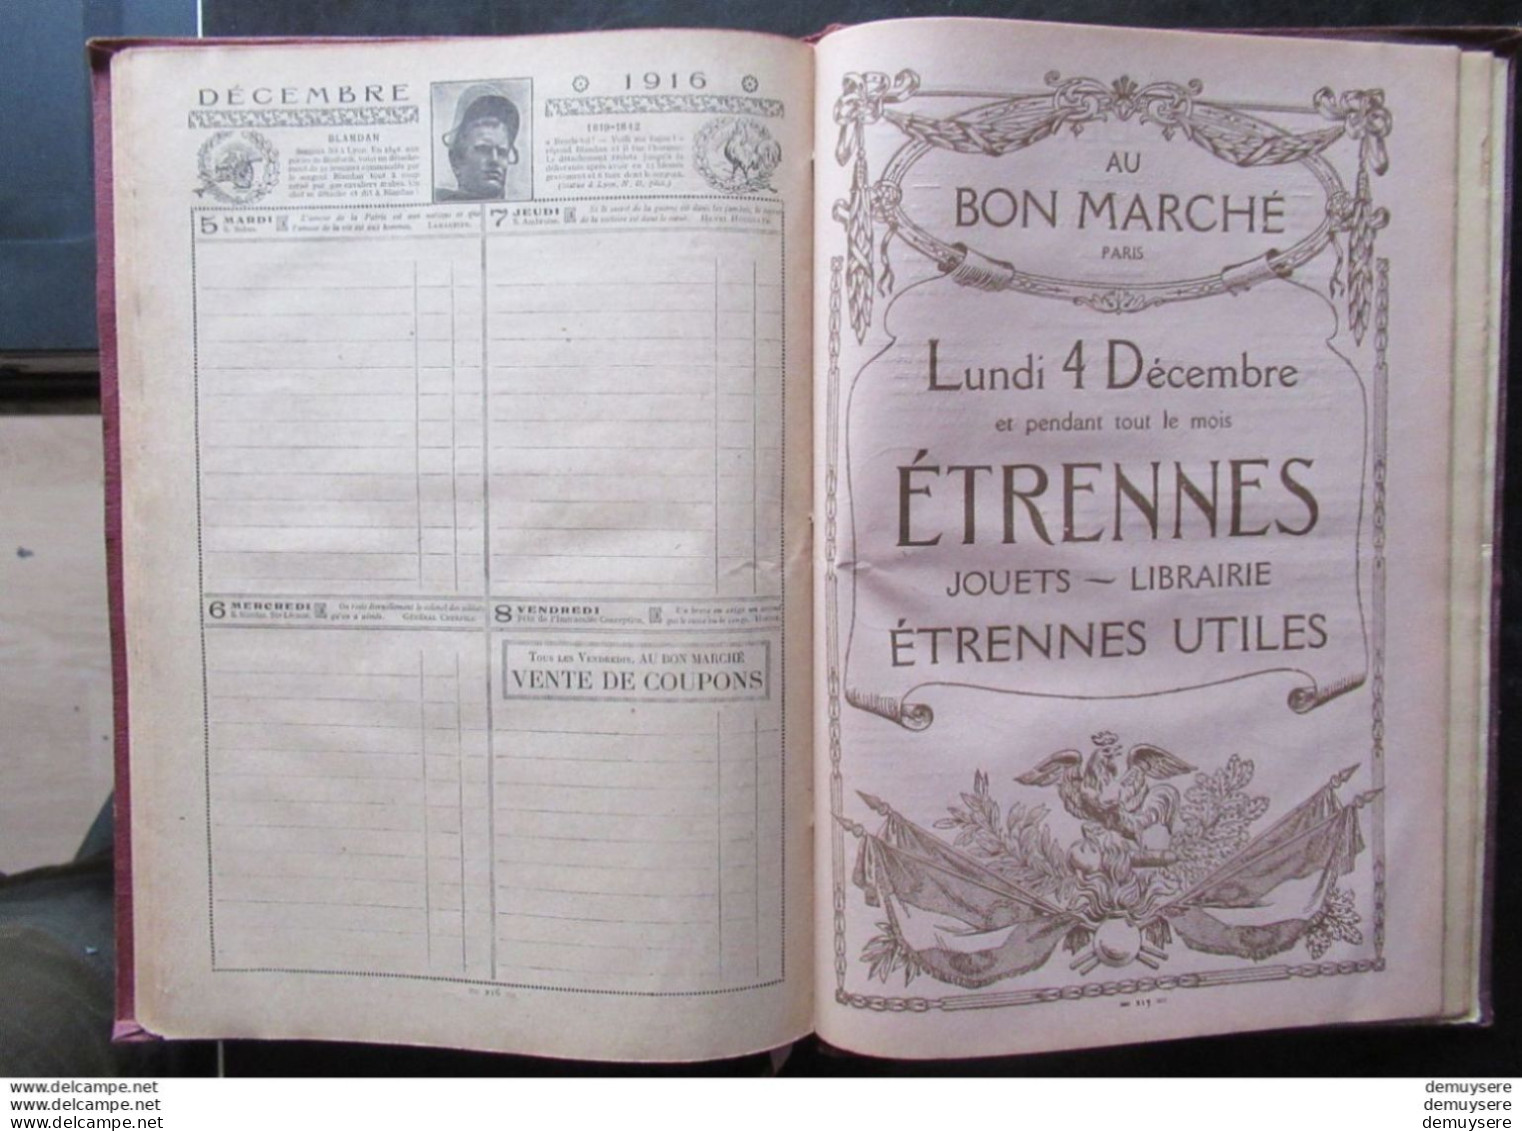 BOEK 003 - AGENDA BUVARD DU BON MARCHE 1916 - Hardcover - 246 PAGER - AVEC PLAN DE PARIS - BON ETAT